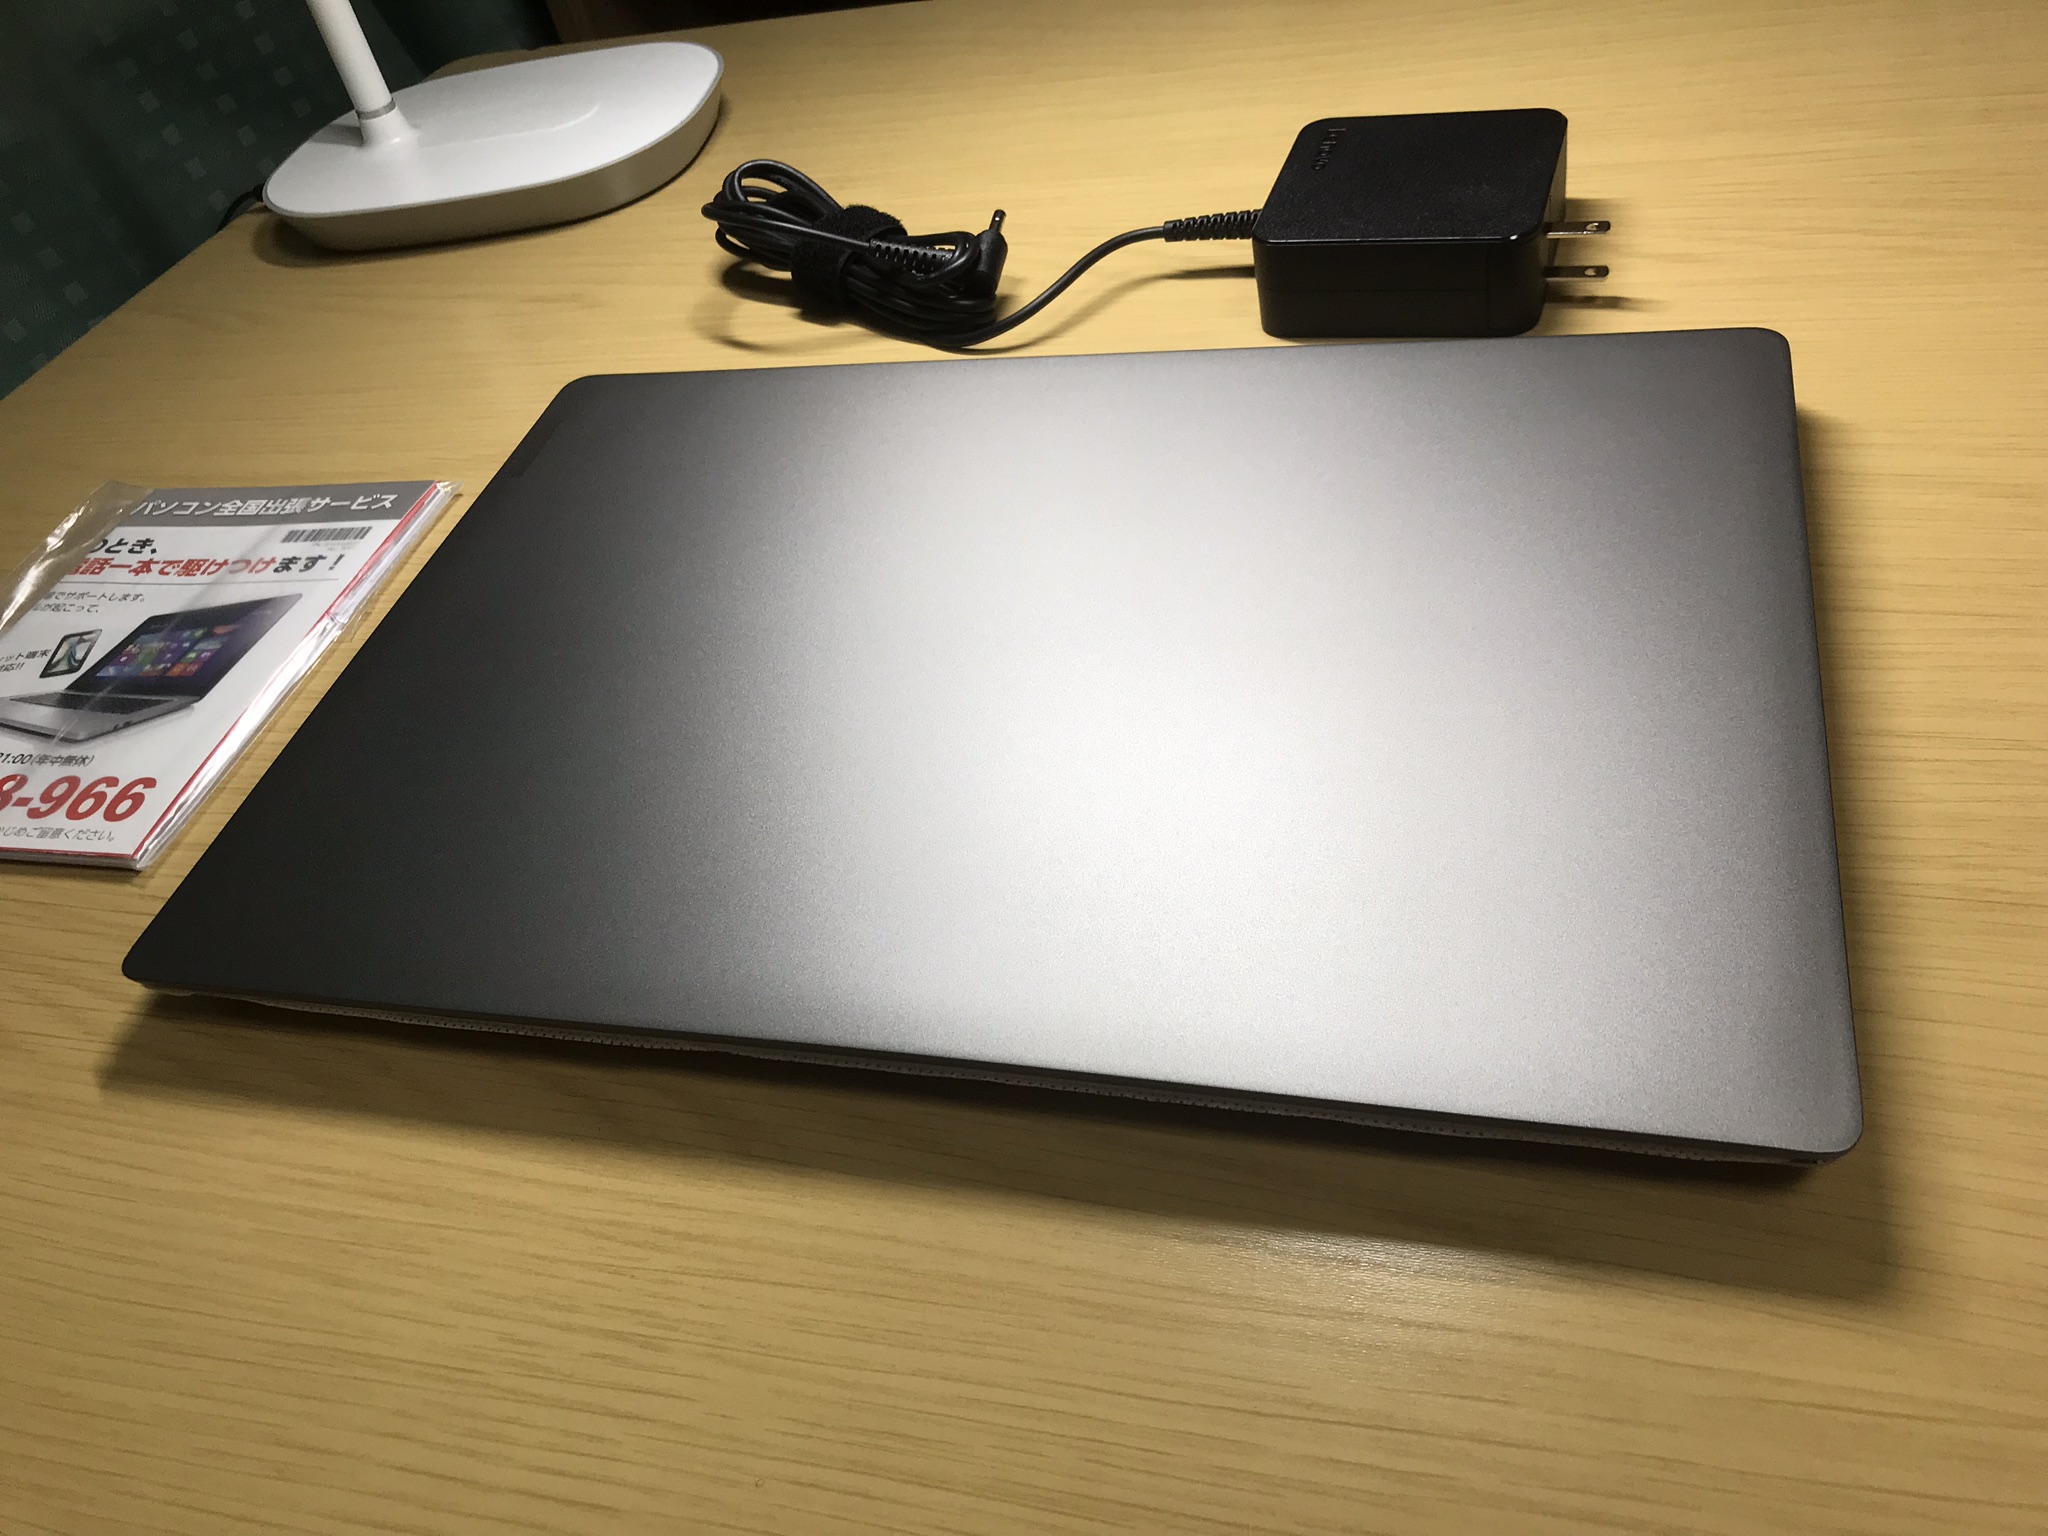 Ideapad 530S(Lenovo) レビュー SSD256, メモリ8GB, 8世代Corei5で7万円台!?